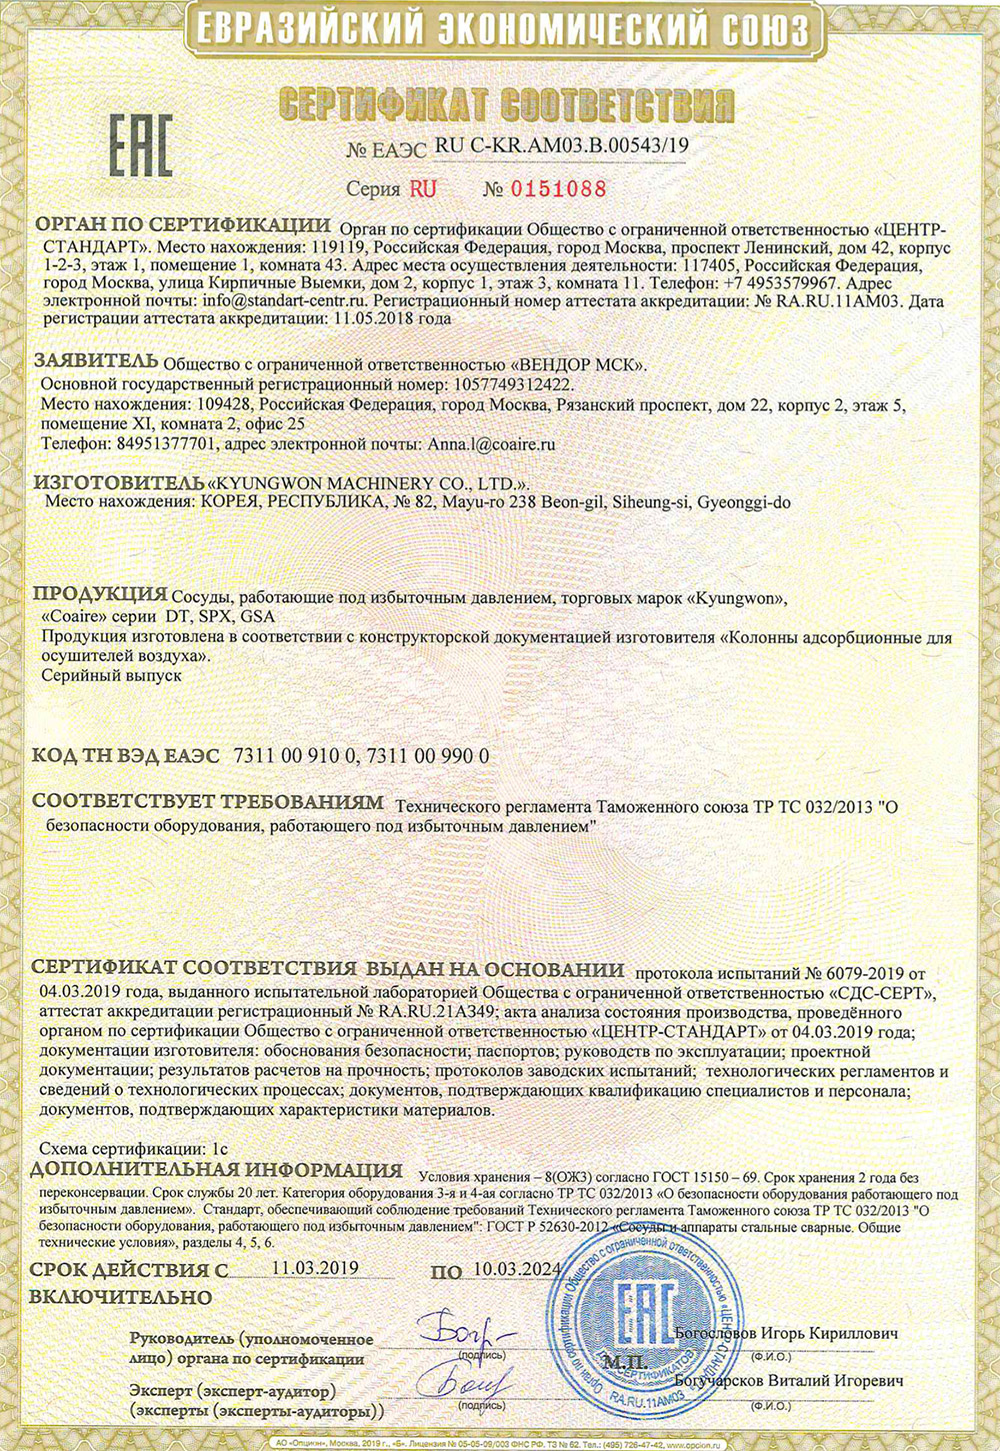 Сертификат евразийского экономического союза (ЕАЭС)